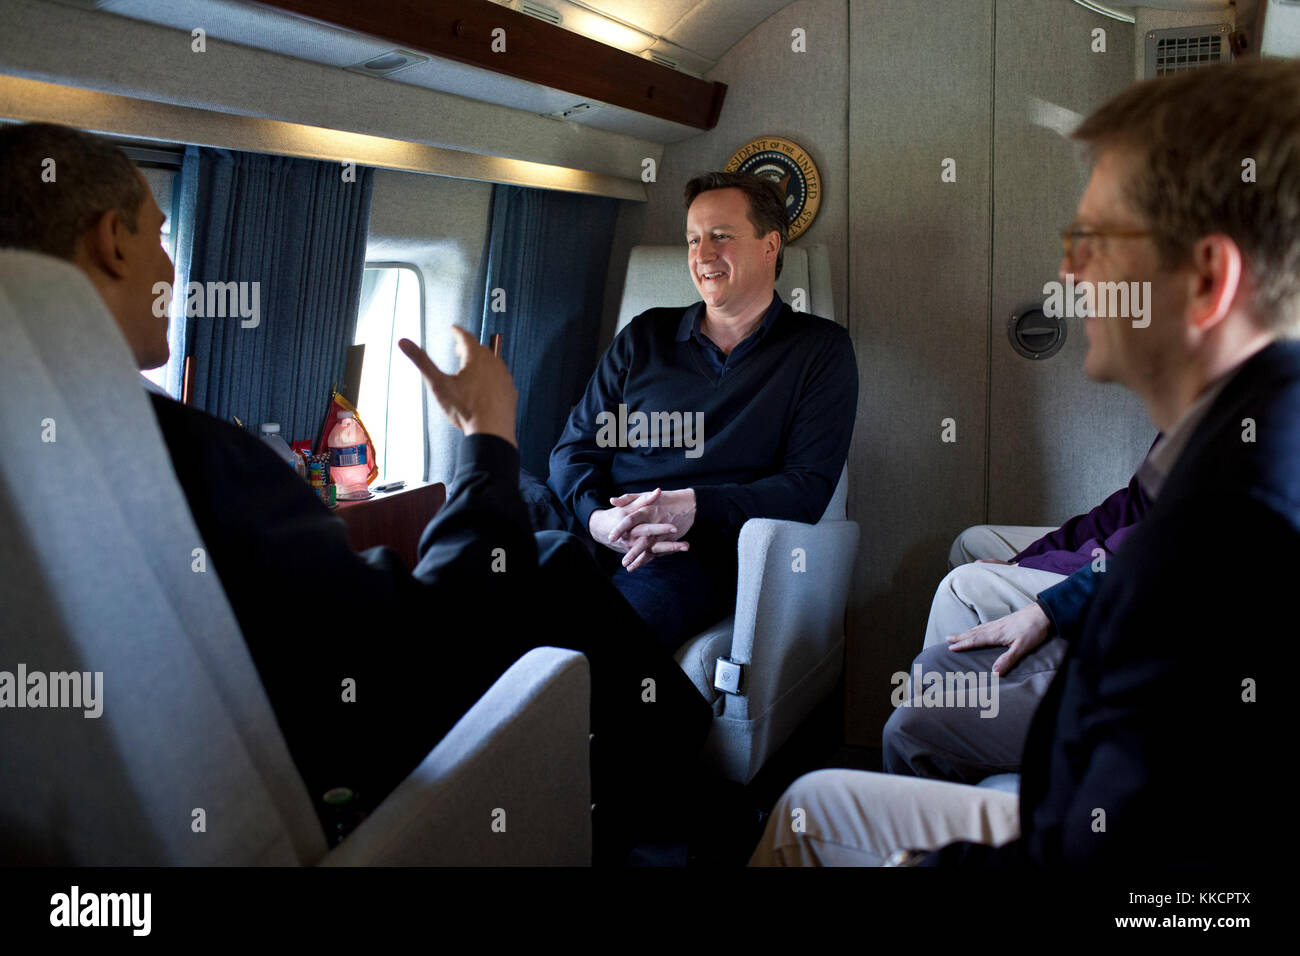 Il presidente Barack Obama ha colloqui con il Primo Ministro David Cameron del regno unito a bordo di un marine in rotta verso la base comune andrews, md., prima di viaggiare a Dayton, Ohio, 13 marzo 2012. Foto Stock